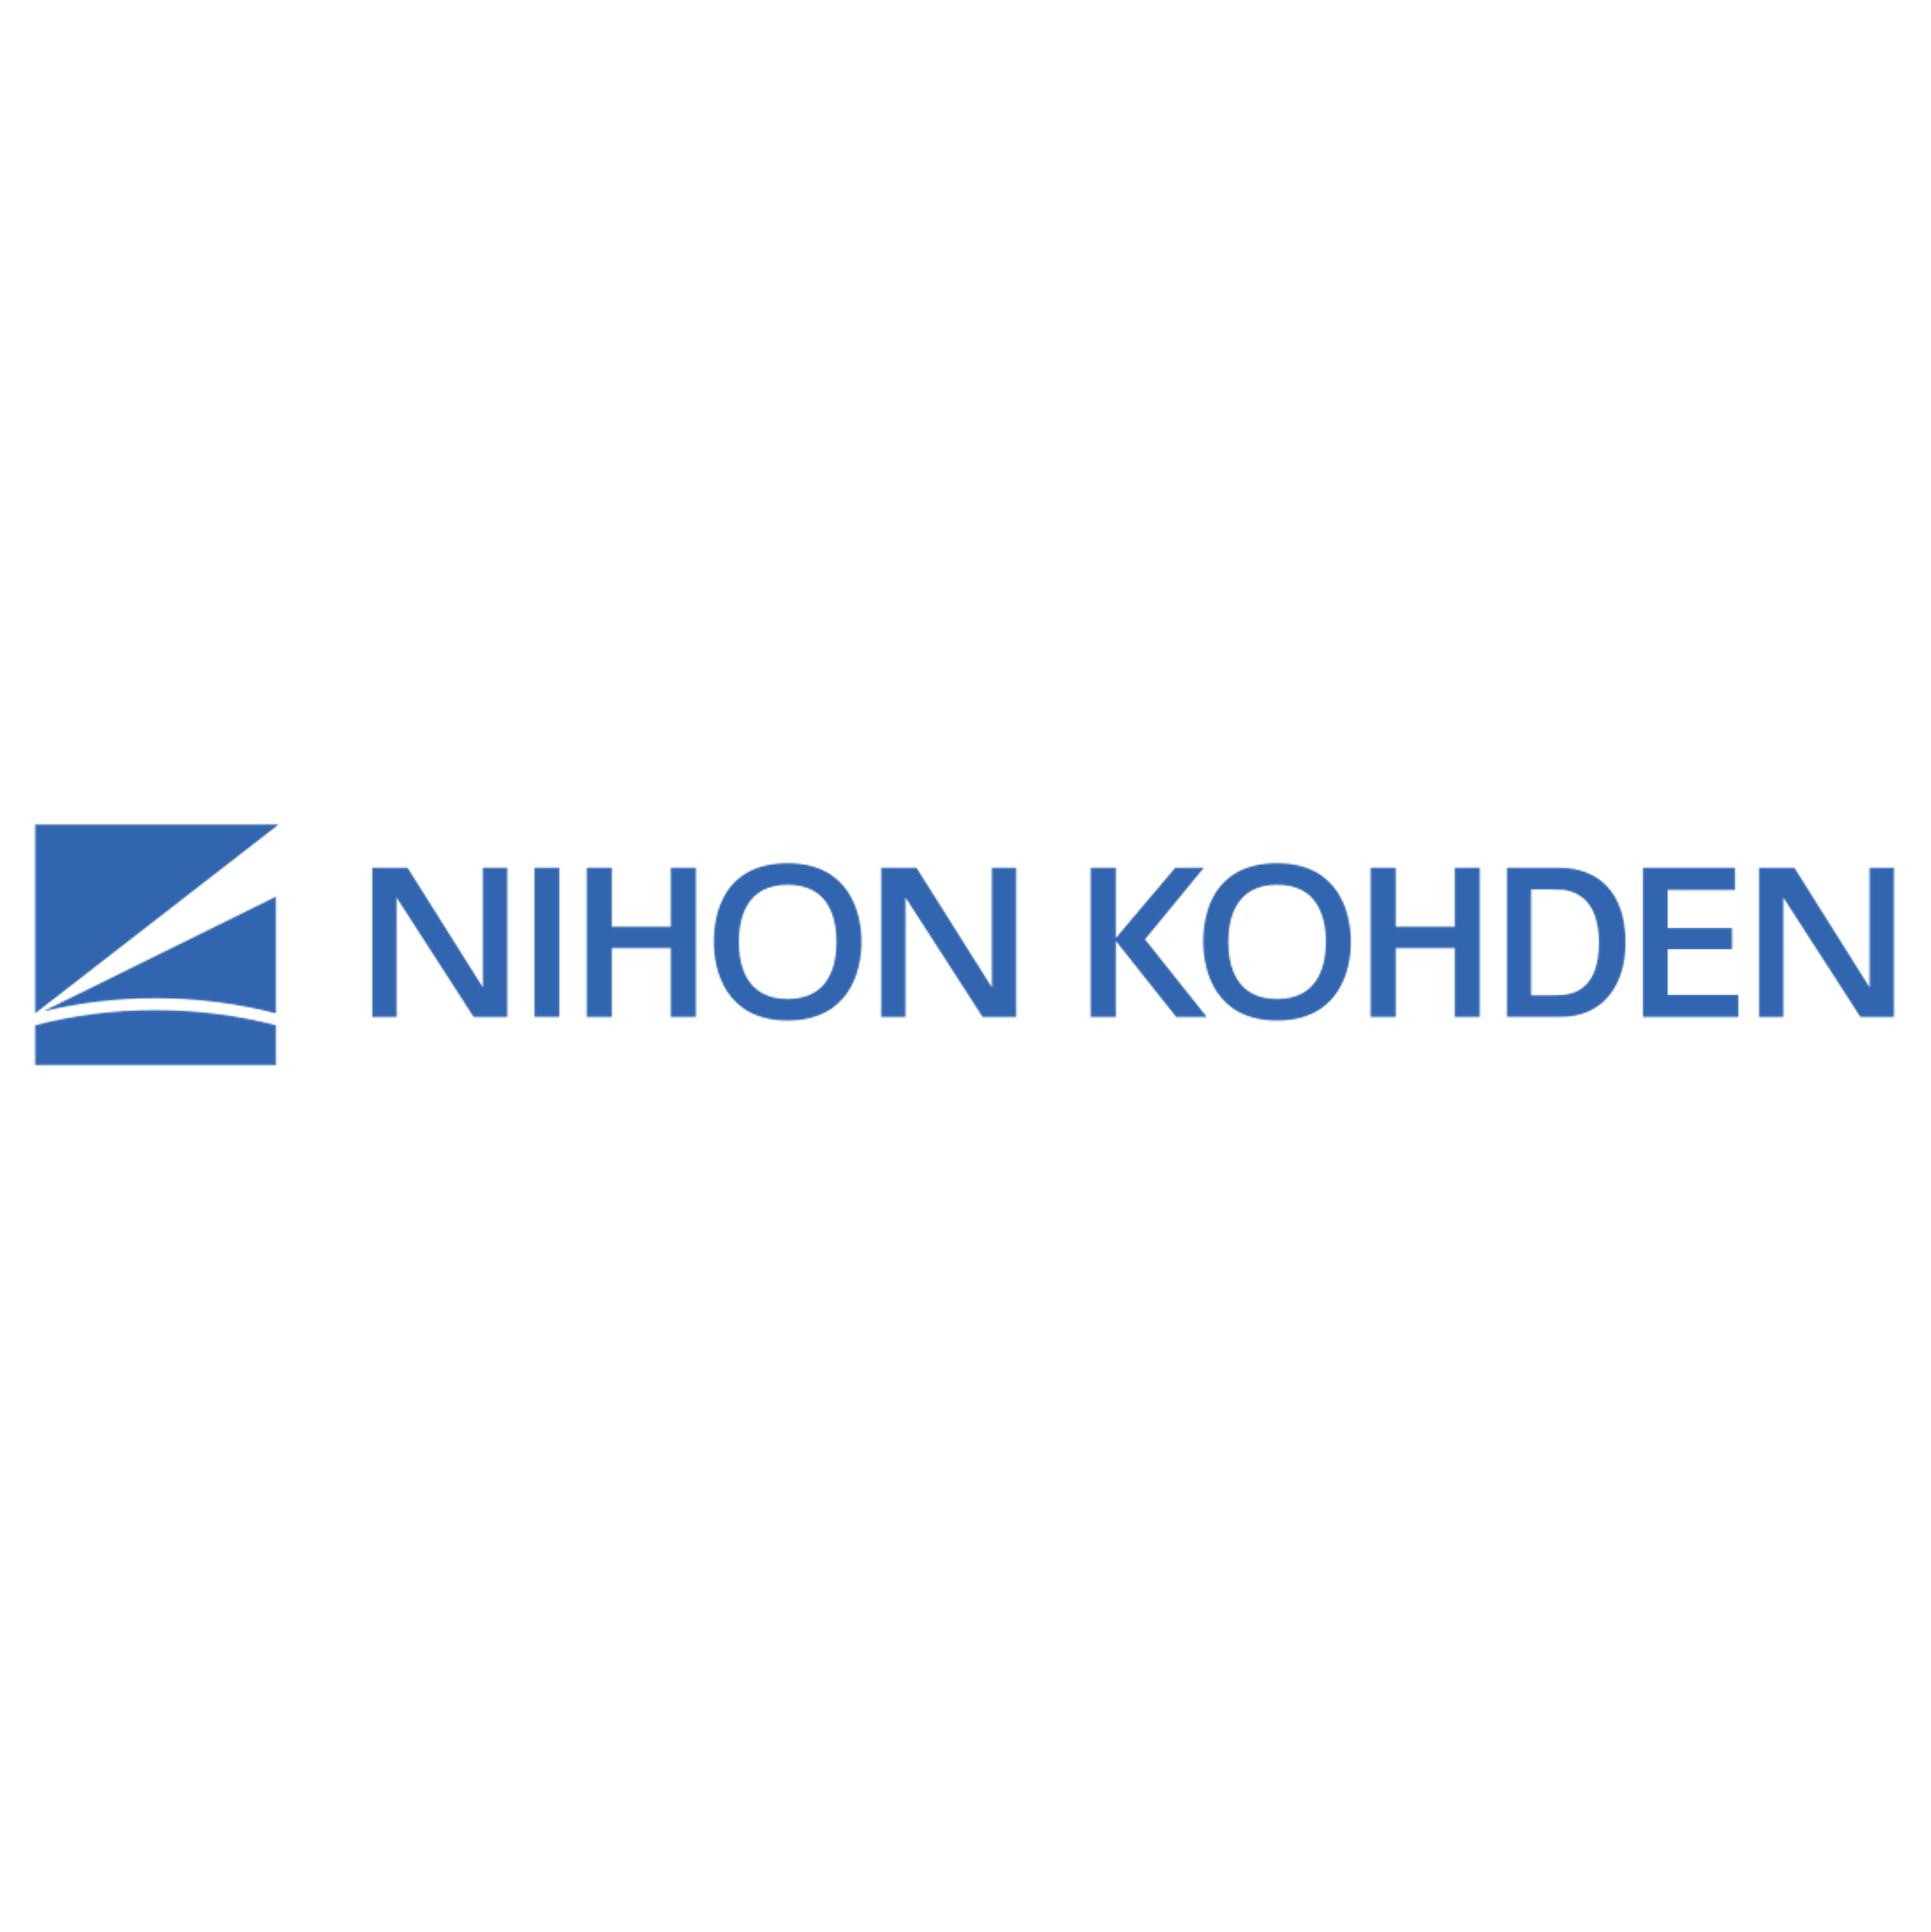 Equiptrack includes Nihon Kohden equipment